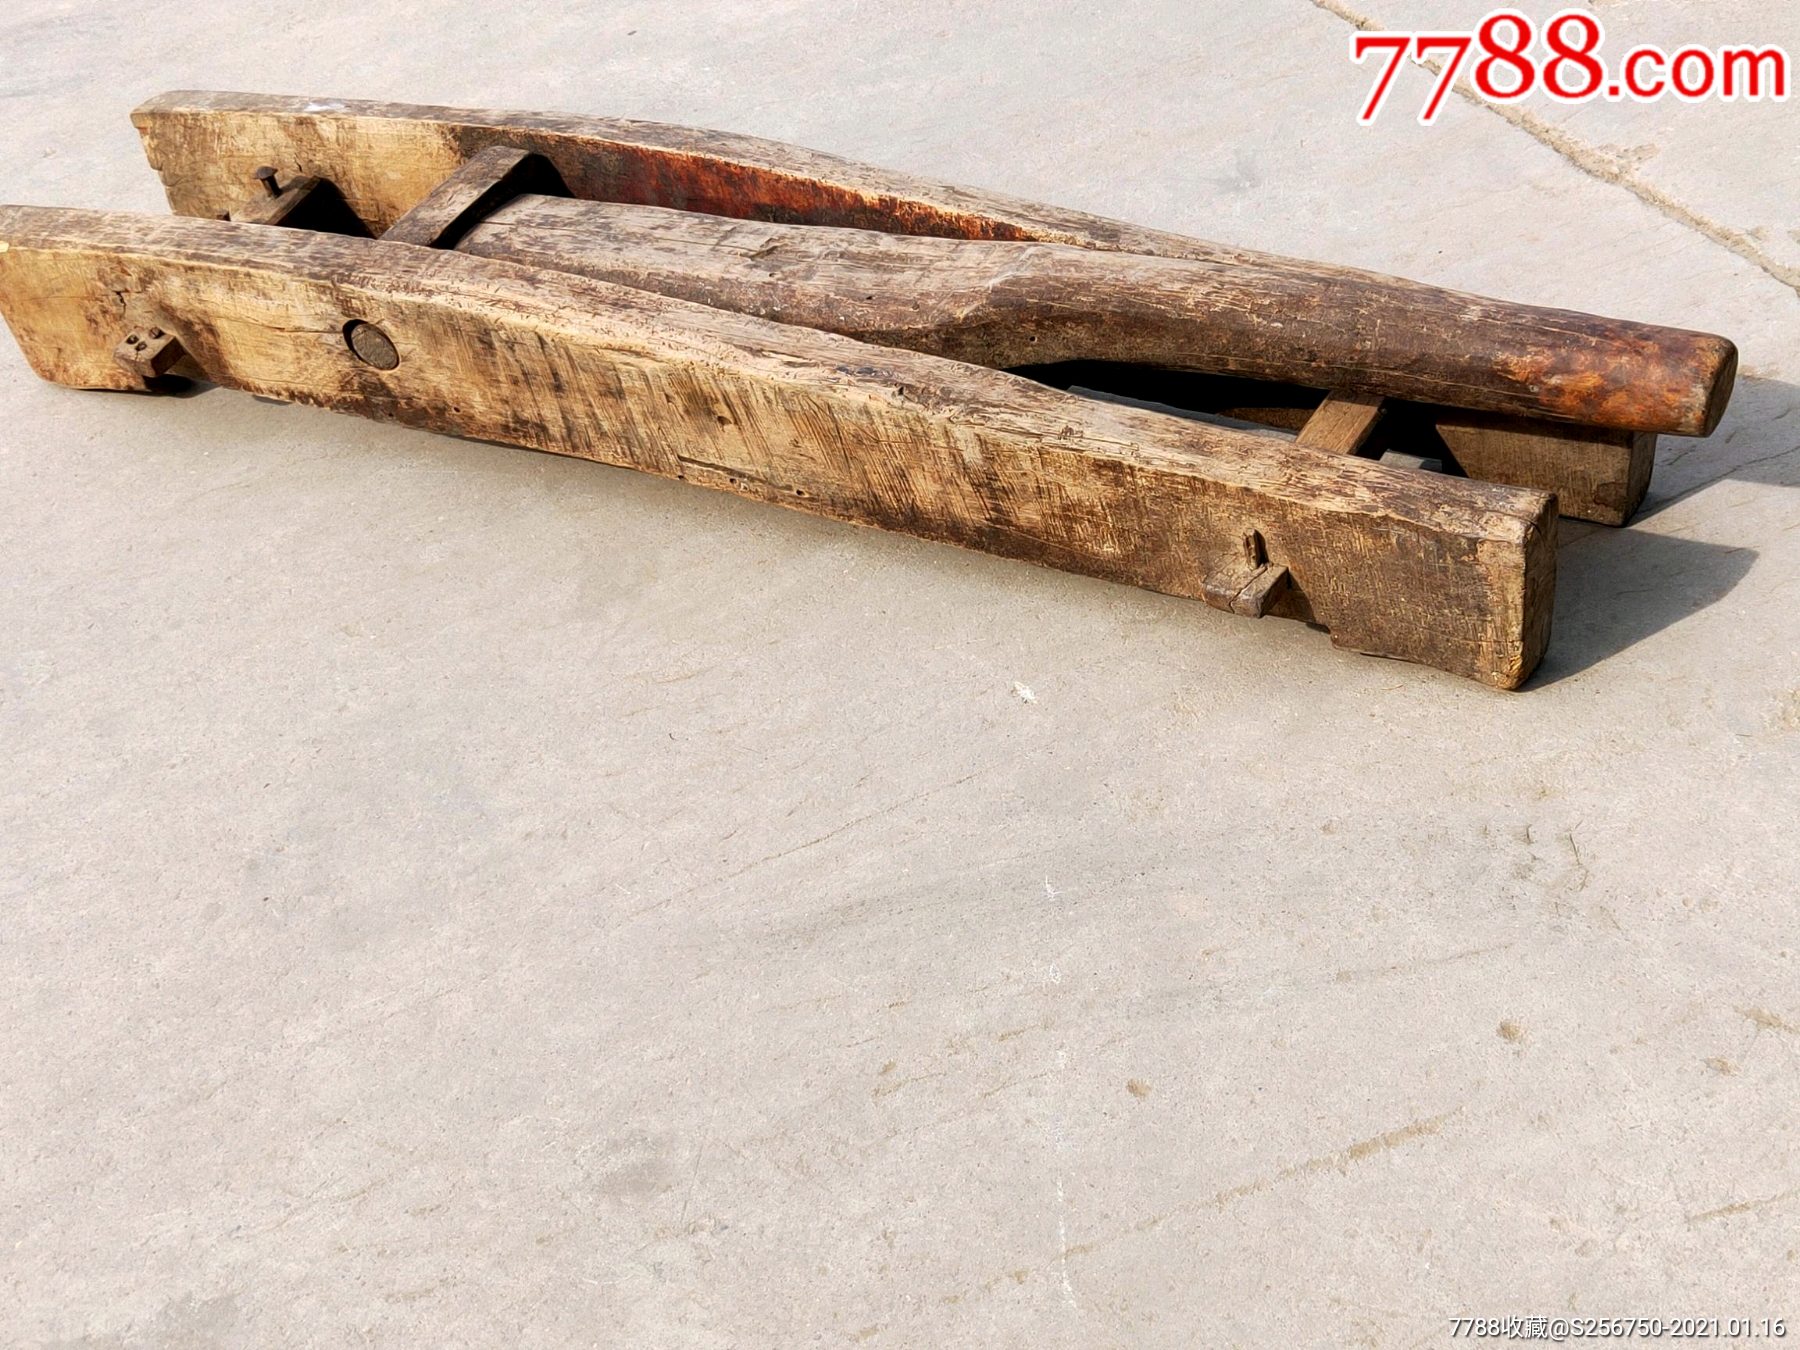 古代审犯人用的刑具夹棍品相如图材质核桃木完整包老尺寸901